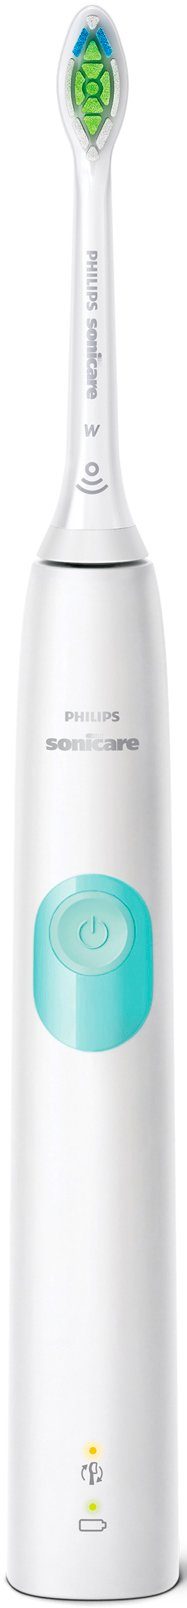 Philips Sonicare Elektrische Zahnbürste ausüben Reiseetui, Sie, Ladestation, Informiert BrushSync zu Sie HX6807/28, wenn Schalltechnologie 1 4300 mit Druck St., viel Aufsteckbürsten: und Funktion, Innovative ProtectiveClean Technologie